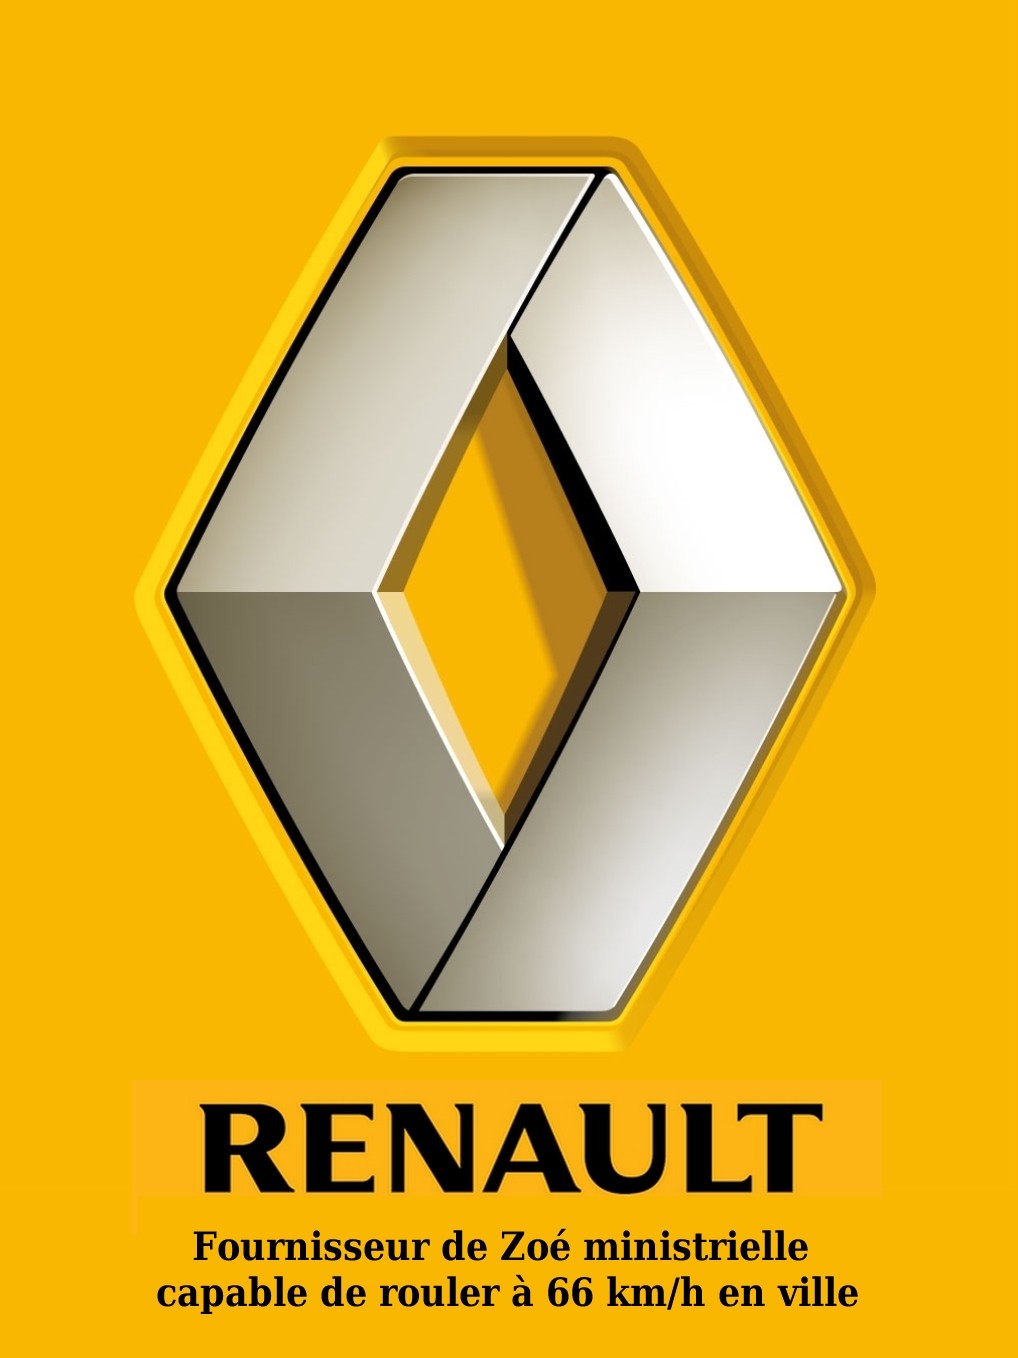 Renault Zoé -Arnaud Montebourg-infraction-code de la route-ZE